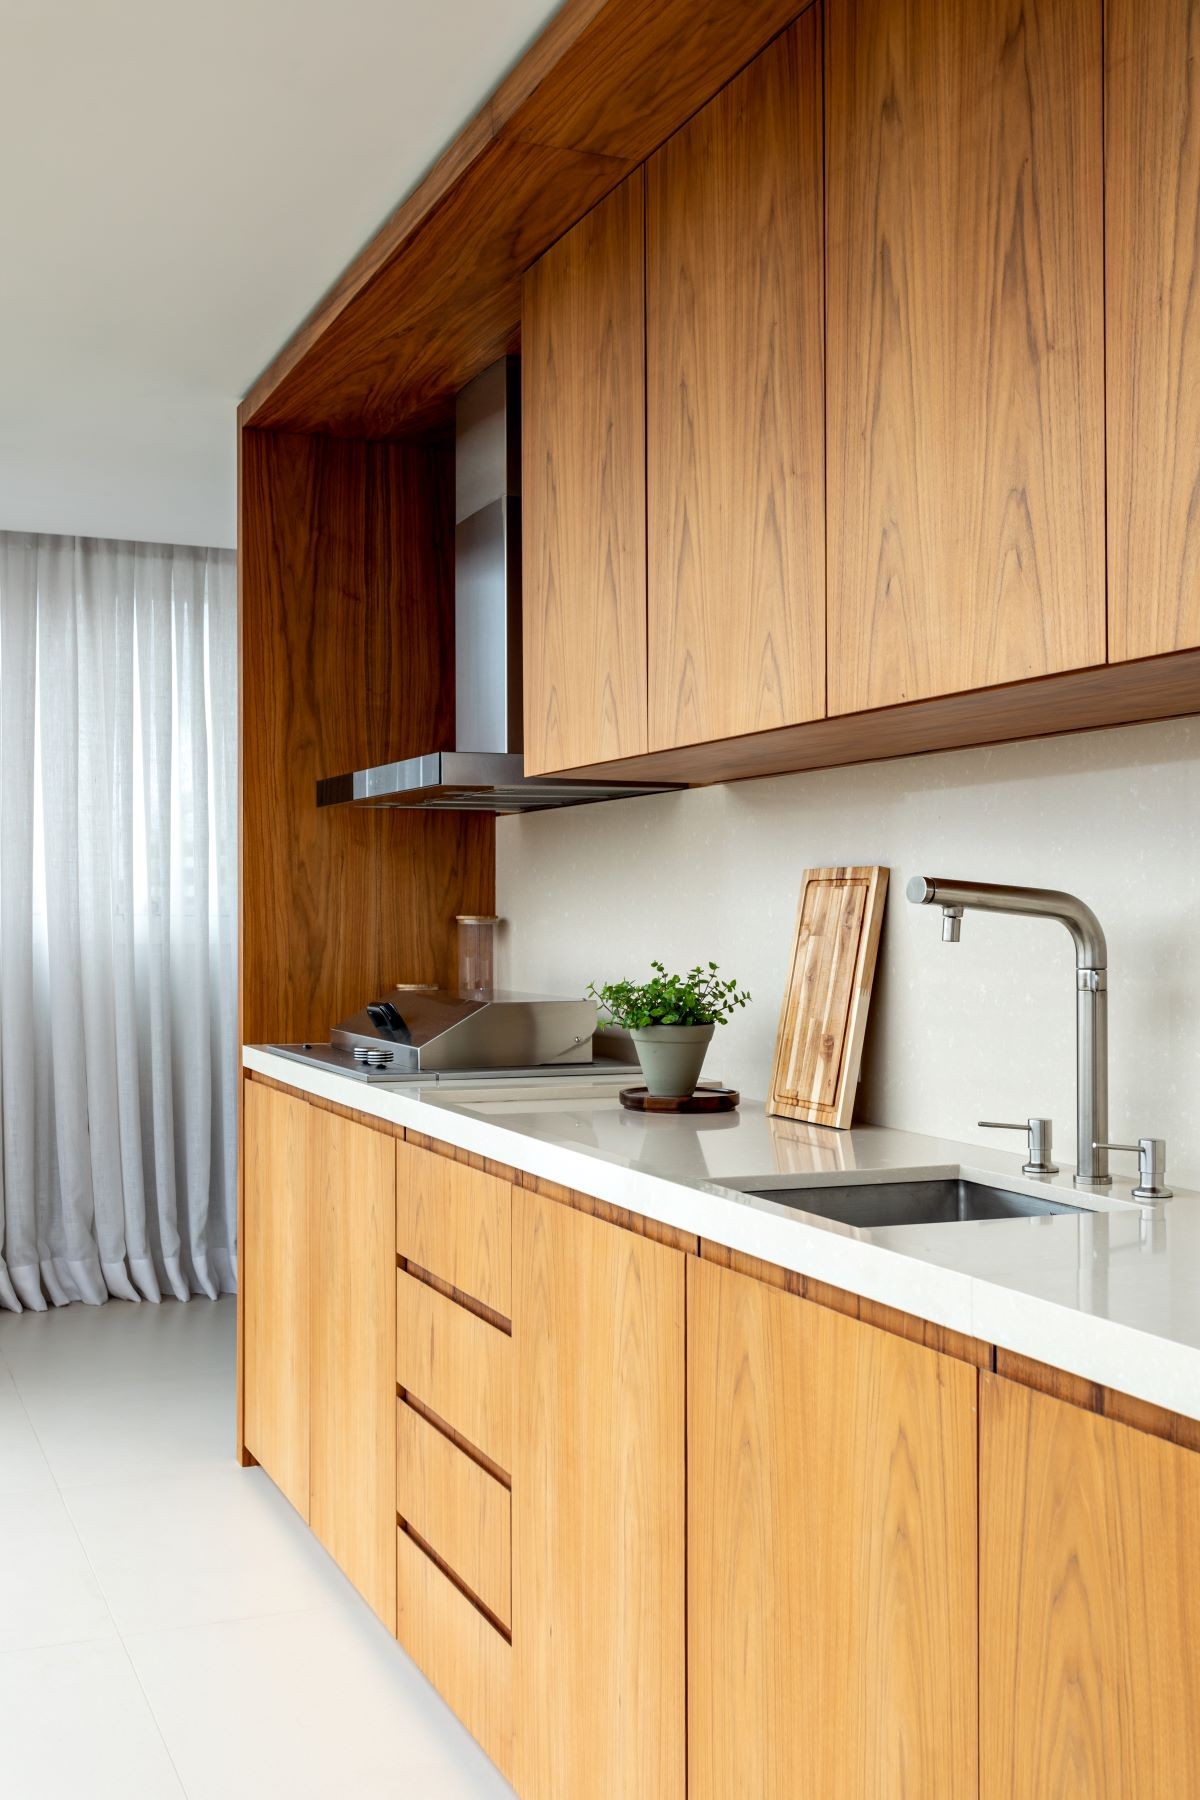 COZINHA | Os armários da cozinha são da pela Artigiano. A madeira clara dá unidade com o gourmet (Foto: Fran Parente / Divulgação)